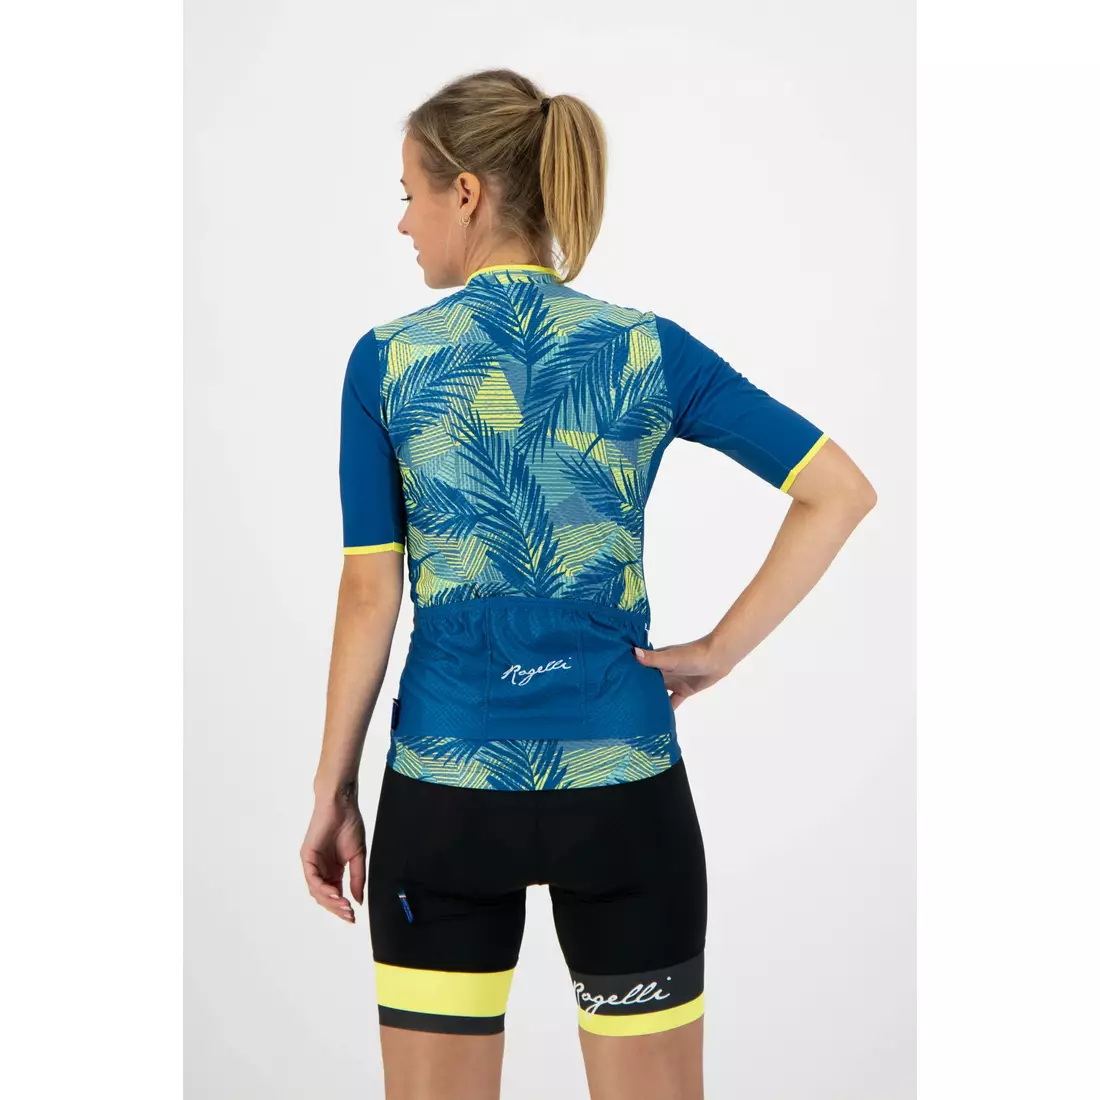 ROGELLI koszulka rowerowa damska LEAF turquoise 010.086